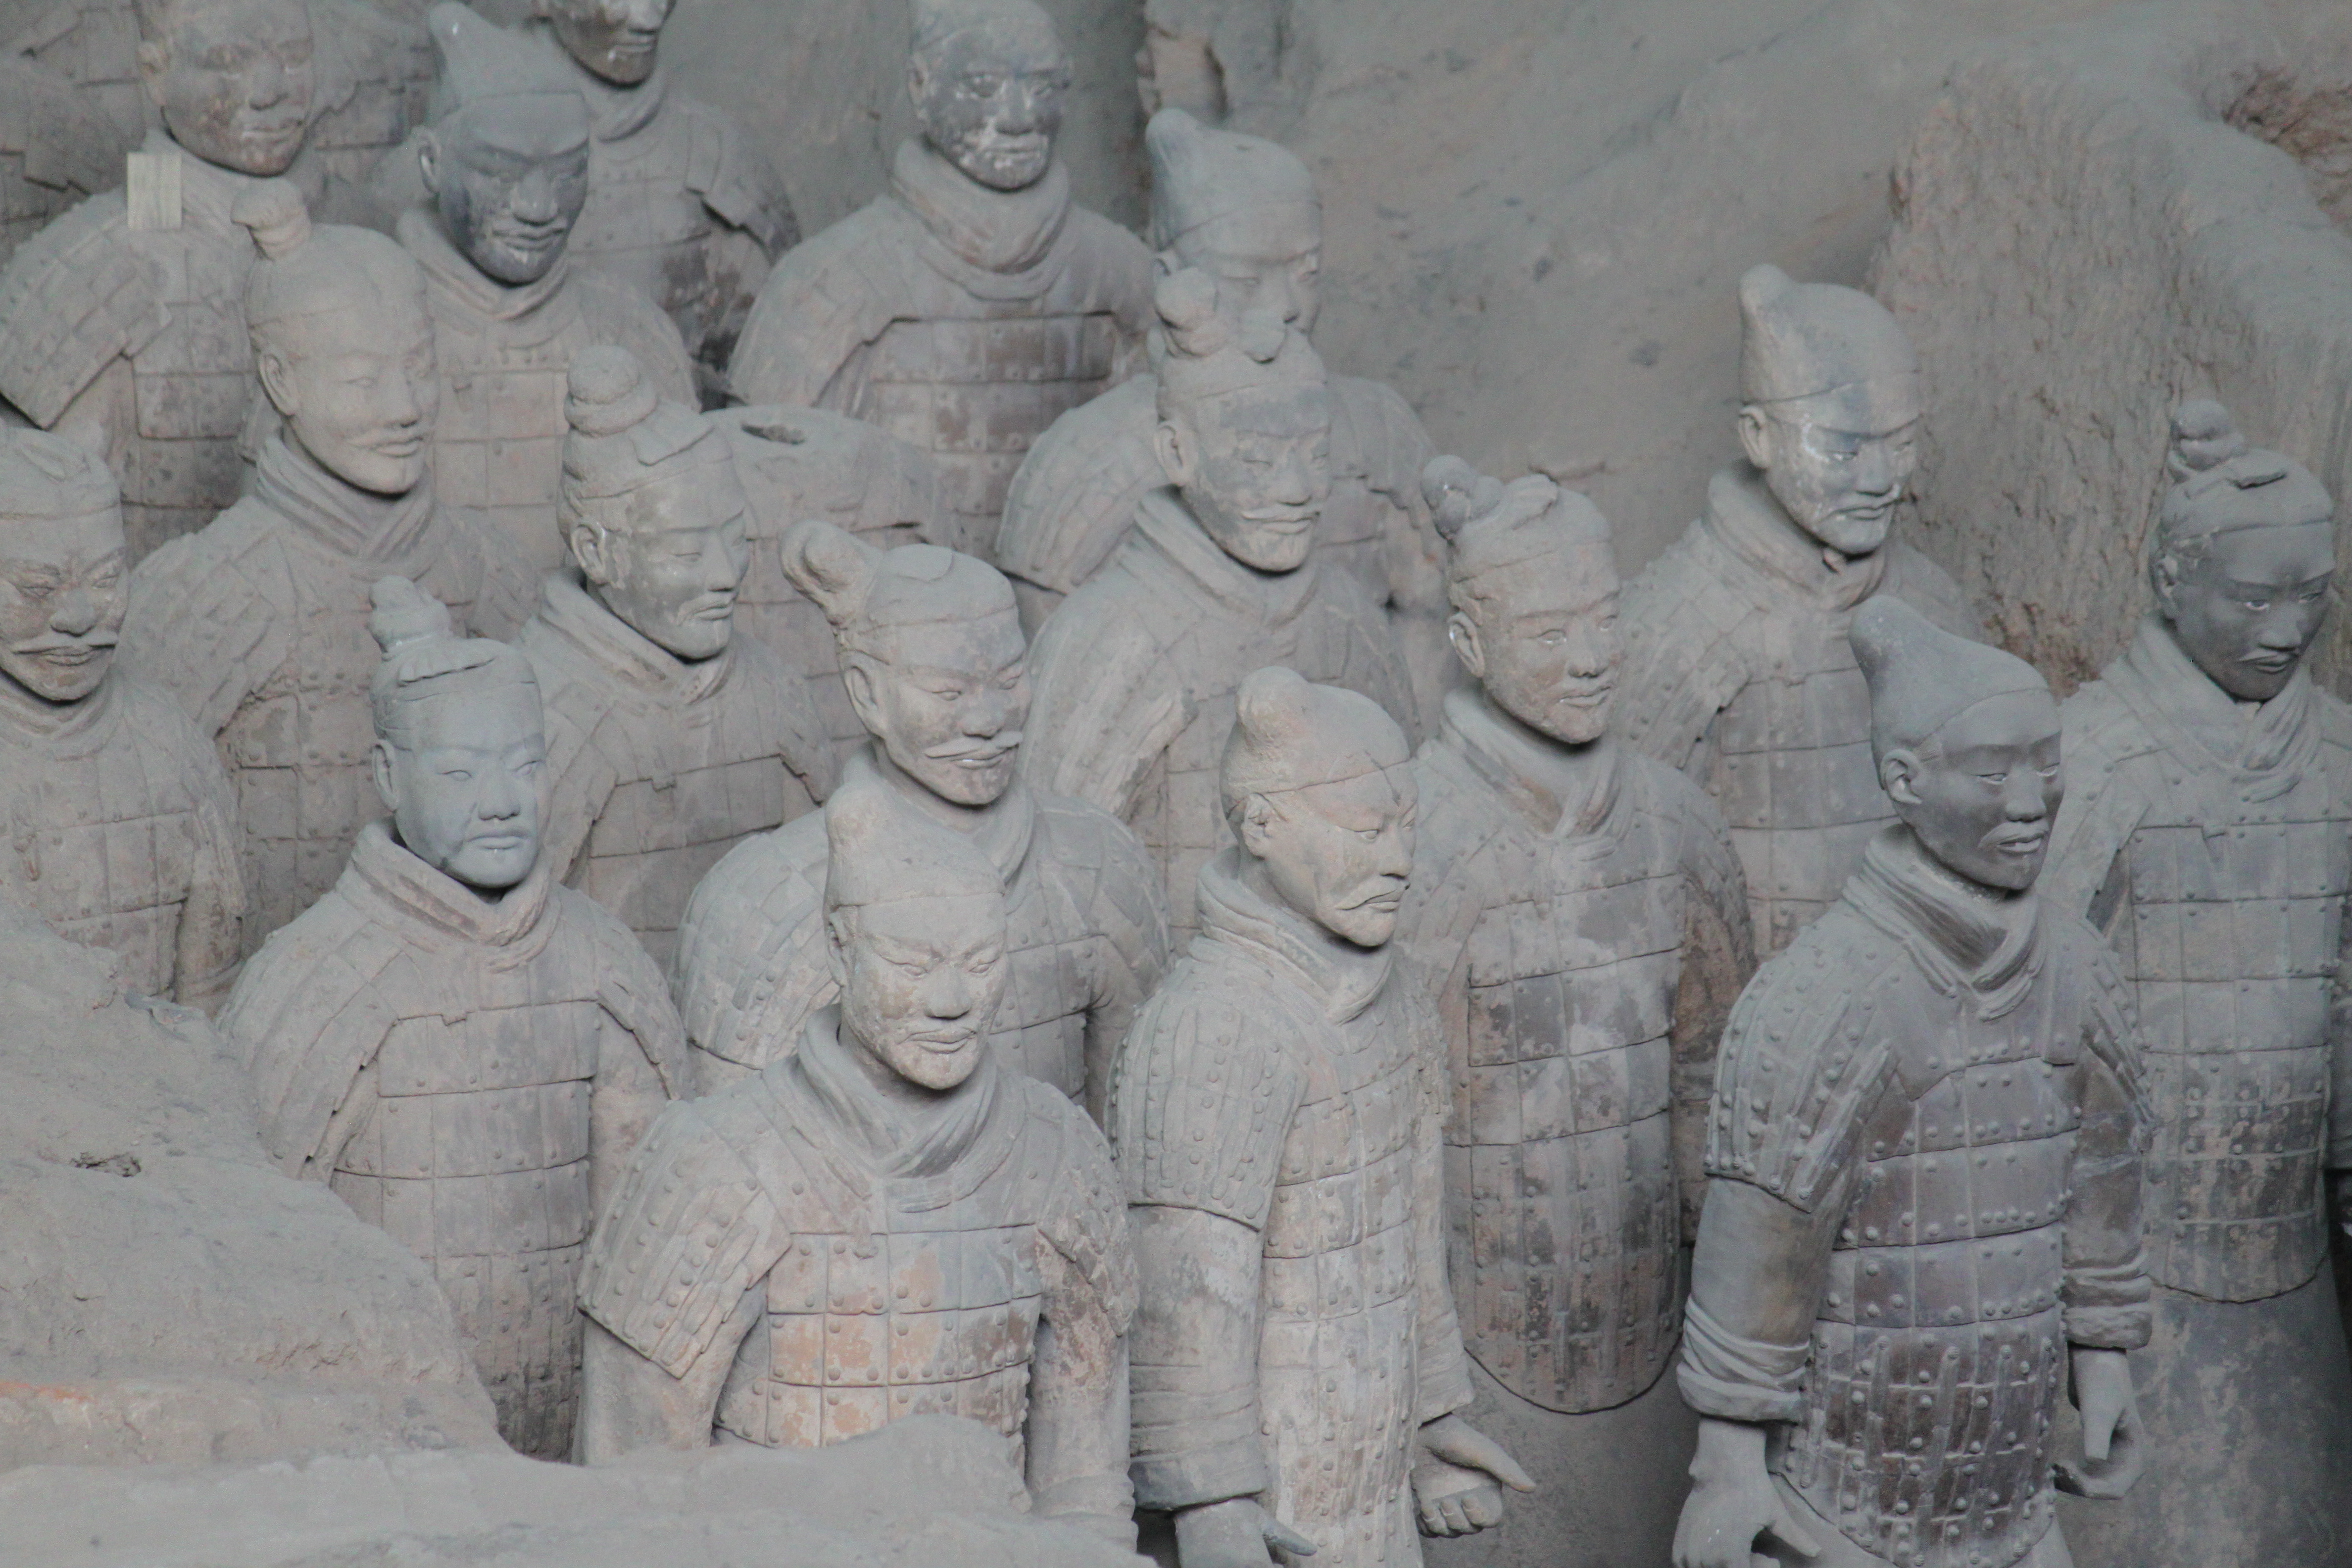 Qin Shi Huang, Universal Warriors Wiki